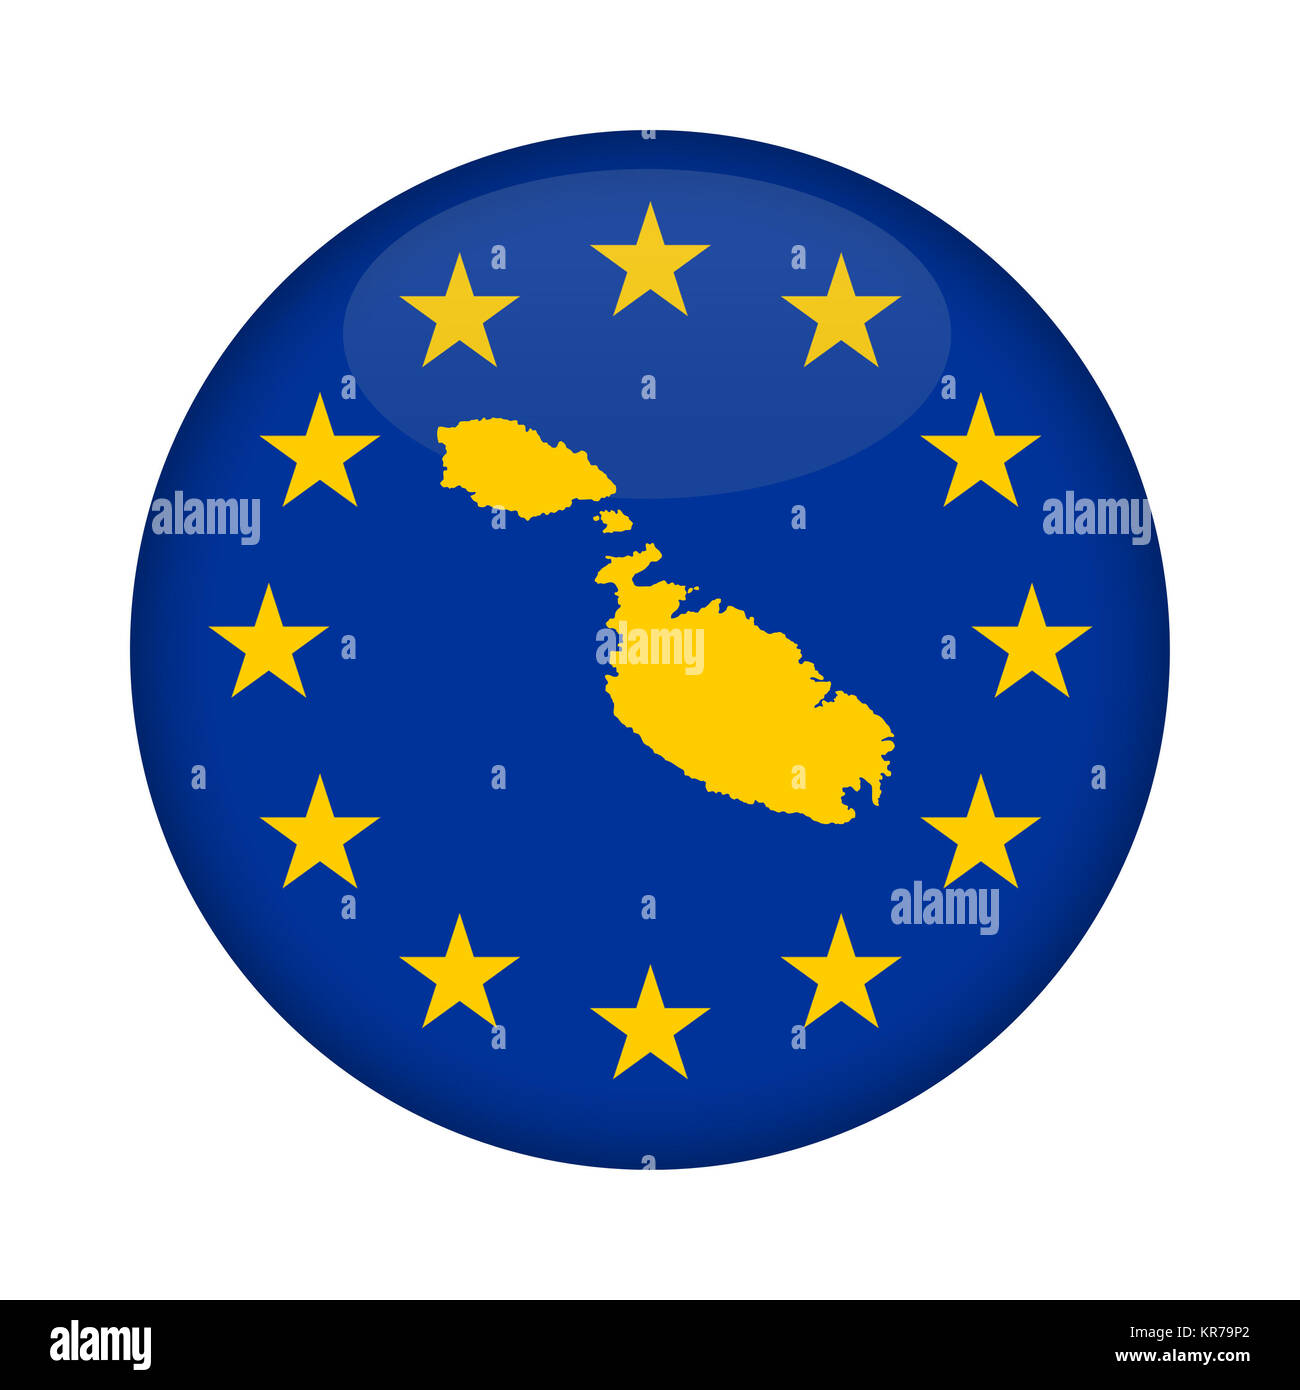 Malta map European Union flag button Stock Photo